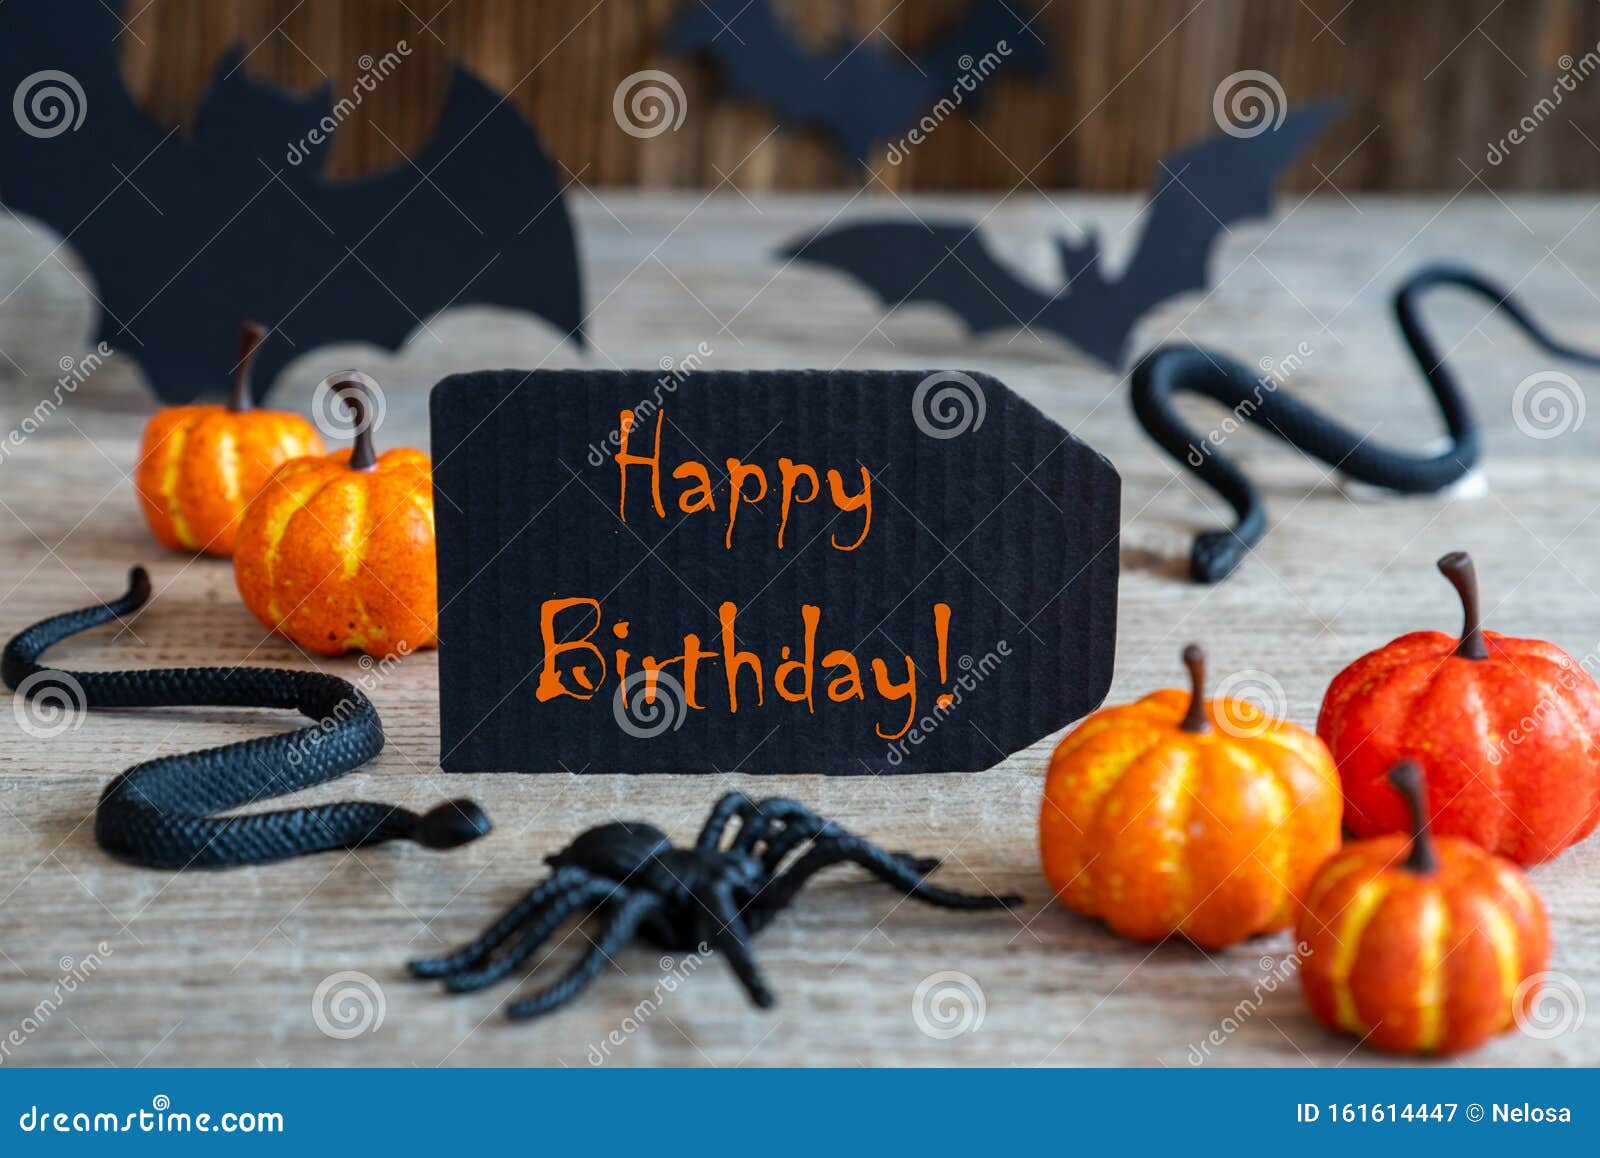 erotisch Bekend voedsel Zwart Label, Tekst Gelukkige Verjaardag, Eng Gekleurde Halloween Decorpatie  Stock Afbeelding - Image of seizoen, sinaasappel: 161614447